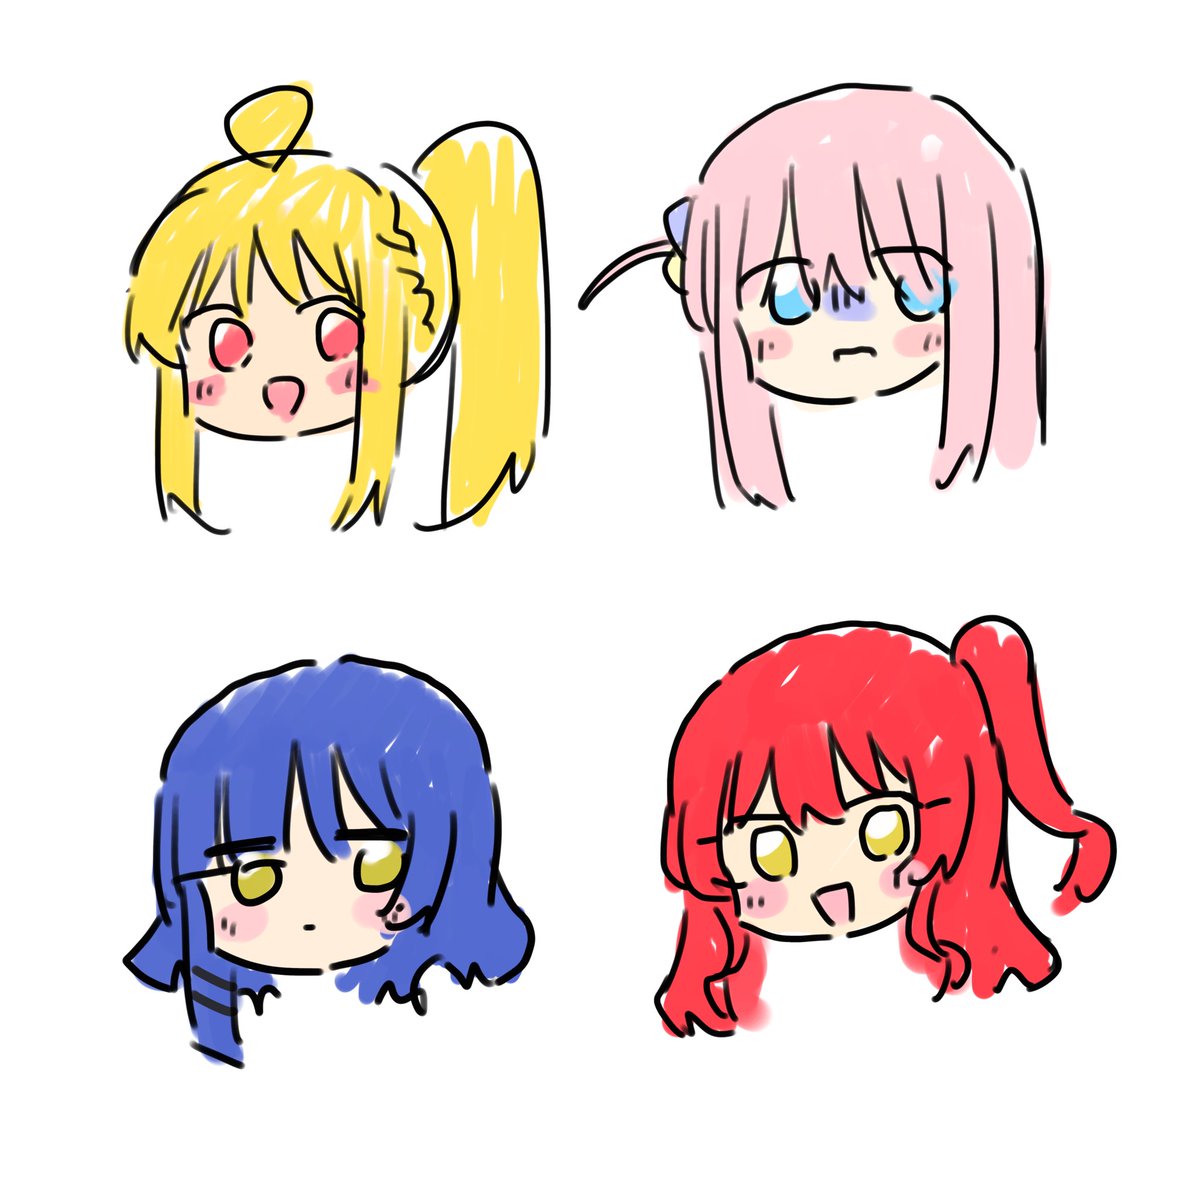 gotou hitori ,ijichi nijika 4girls multiple girls yellow eyes blonde hair pink hair blue hair red hair  illustration images